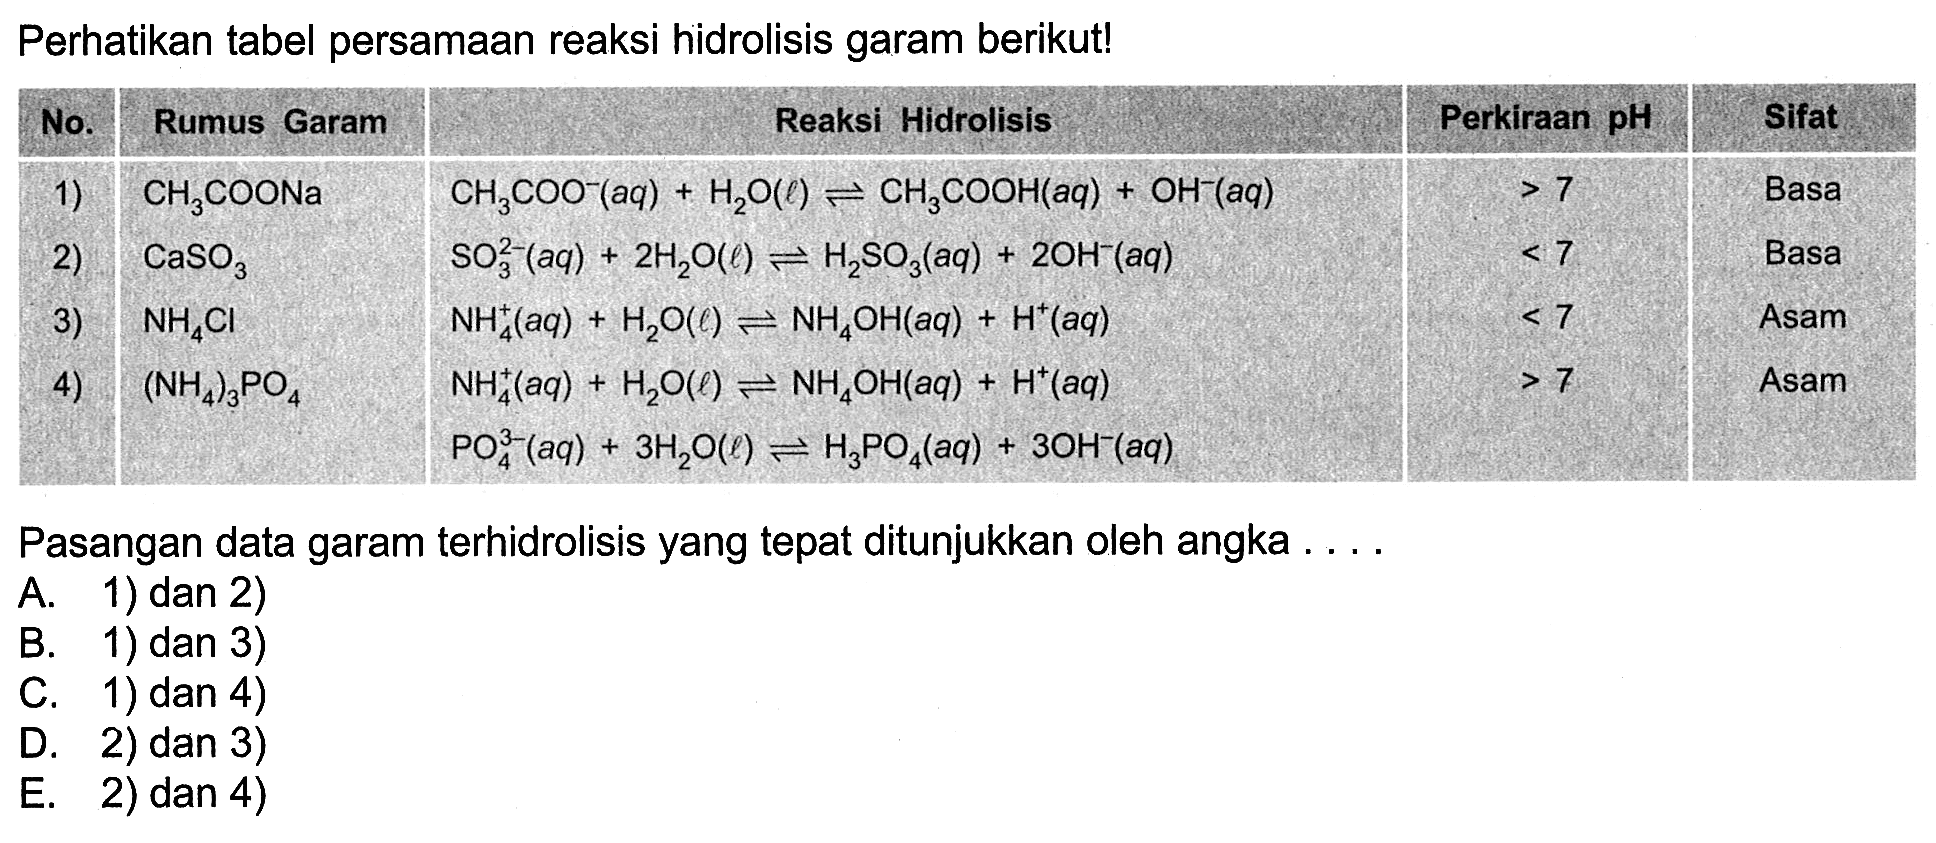 Perhatikan tabel persamaan reaksi hidrolisis garam berikut! No. Rumus Garam Reaksi Hidrolisis Perkiraan pH Sifat 1) CH3COONa CH3COO^-(aq)+H2O(l) <=> CH3COOH(aq)+OH^-(aq) >7 Basa 2) CASO3 SO3^2-(aq)+2 H2O(l) <=> H2SO3(aq)+2 OH^-(aq) <7 Basa 3) NH4Cl NH4^+(aq)+H2O(l) <=> NH4OH(aq)+H^+(aq) <7 Asam 4) (NH4)3PO4 NH4Cl NH4^+(aq)+H2O(l) <=> NH4OH(aq)+H^+(aq) PO4^3-(aq)+3 H2O(l) <=> H3PO4(aq)+3 OH^-(aq) >7 Asam Pasangan data garam terhidrolisis yang tepat ditunjukkan oleh angka .... A. 1) dan 2) B. 1) dan 3) C. 1) dan 4) D. 2) dan 3) E. 2) dan 4)